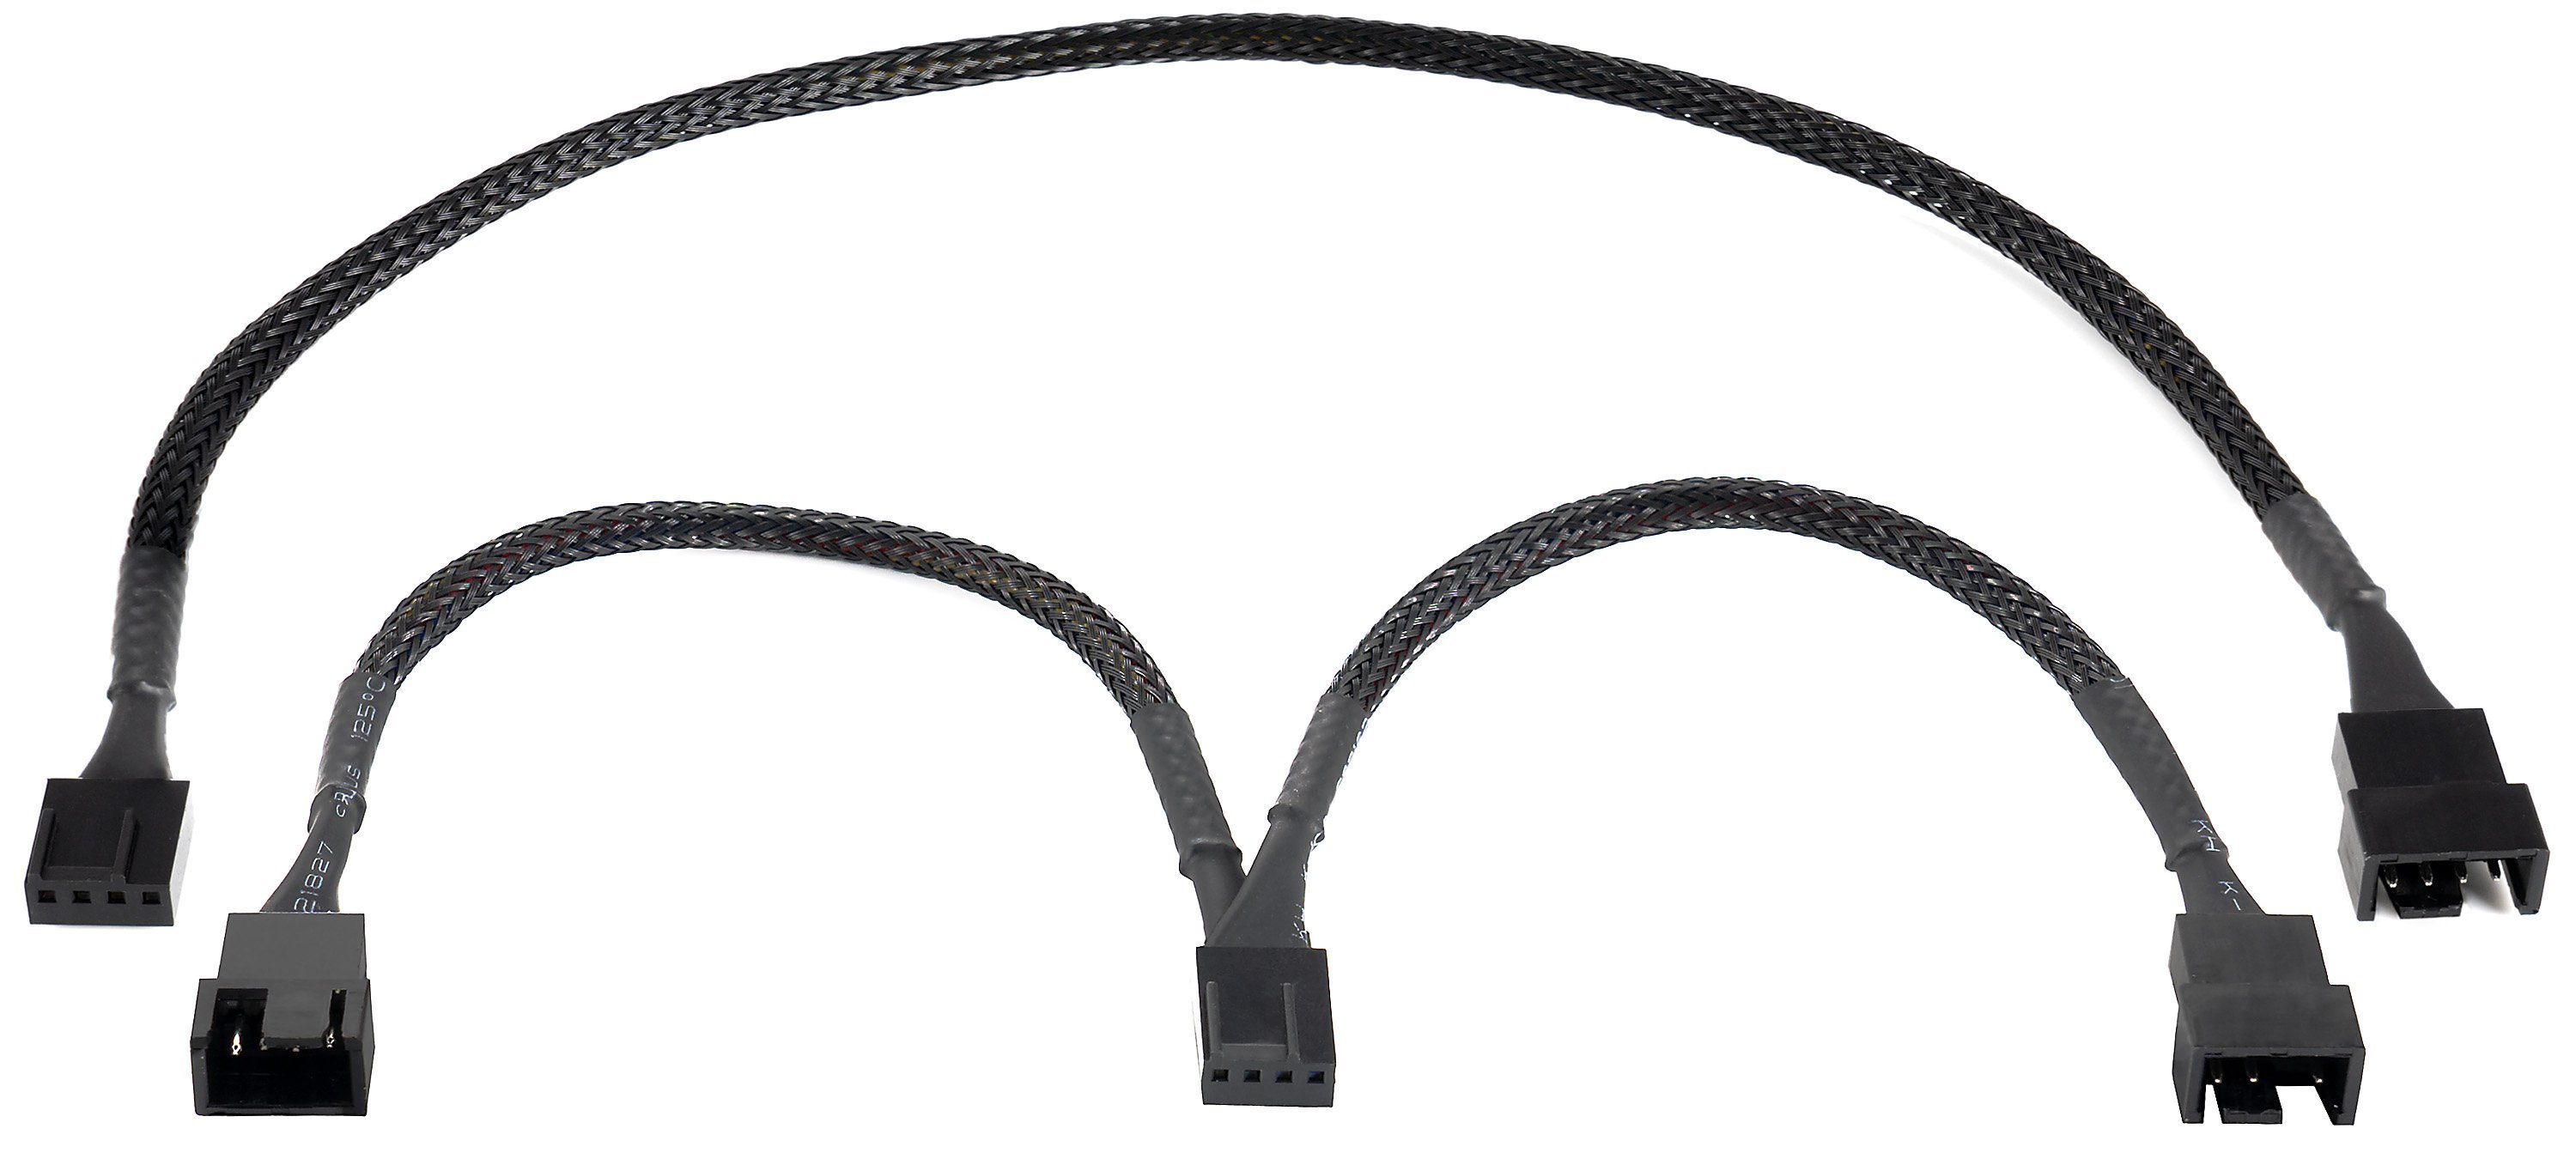 Poppstar Lüfter Verteilerkabel 3x20cm, Molex (m) auf 3x 2-Pin Stecker (m)  Computer-Kabel, (60 cm), 12V, zum Anschluss von Prozessor- und  Gehäuselüftern an ein Netzteil